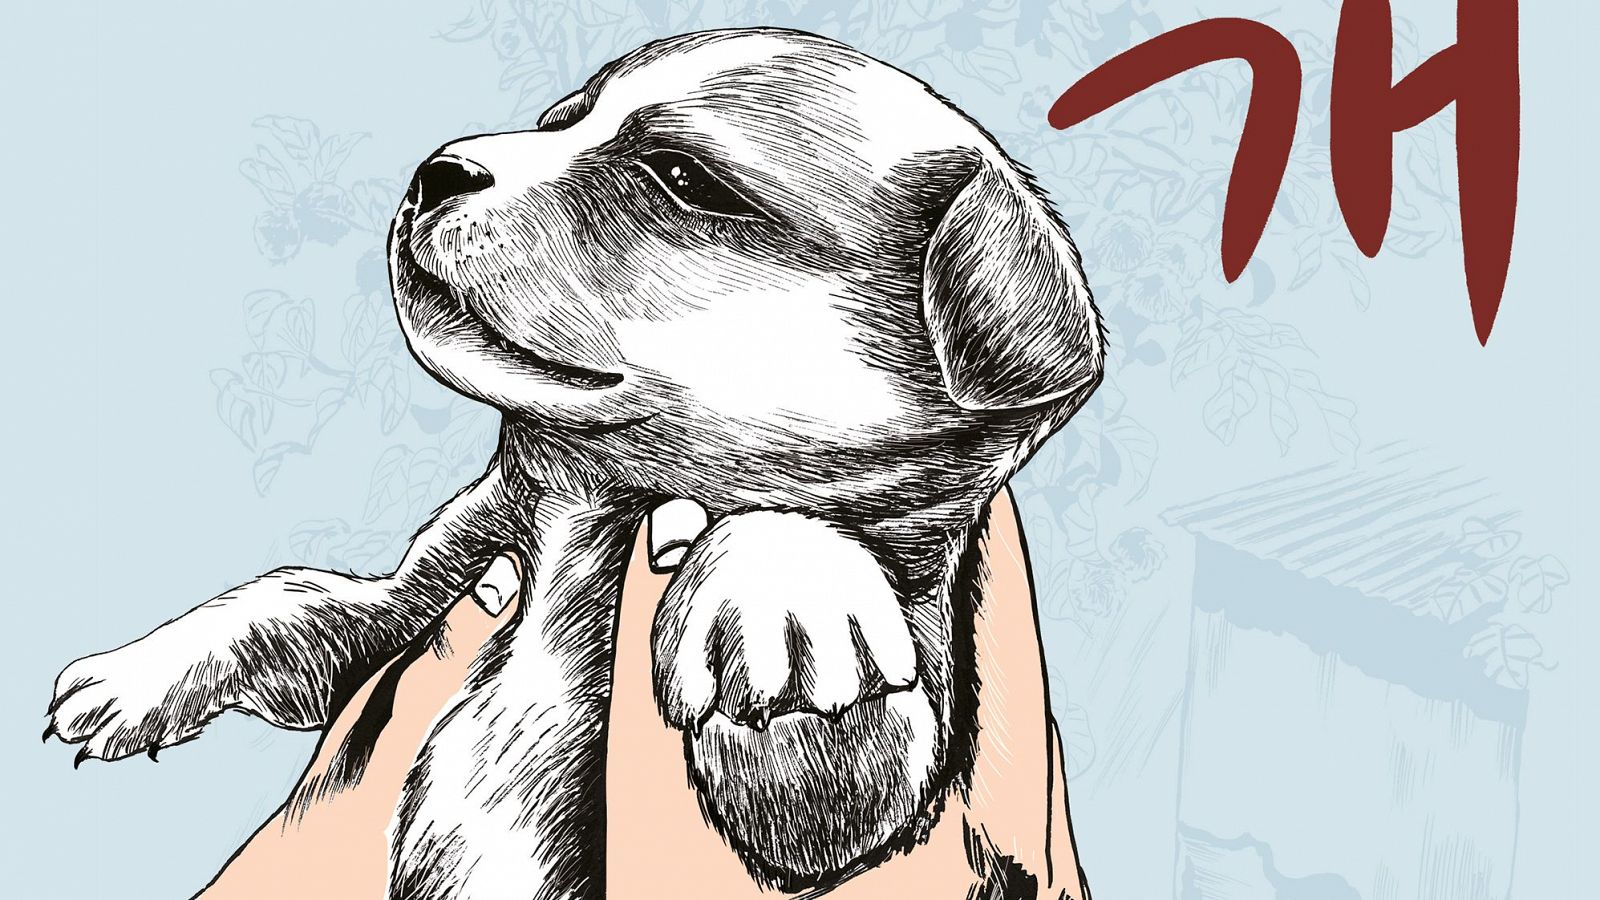 Keum Suk Gendry-Kim publica 'Perros': "Cada da vea a perros maltratados y abandonados"